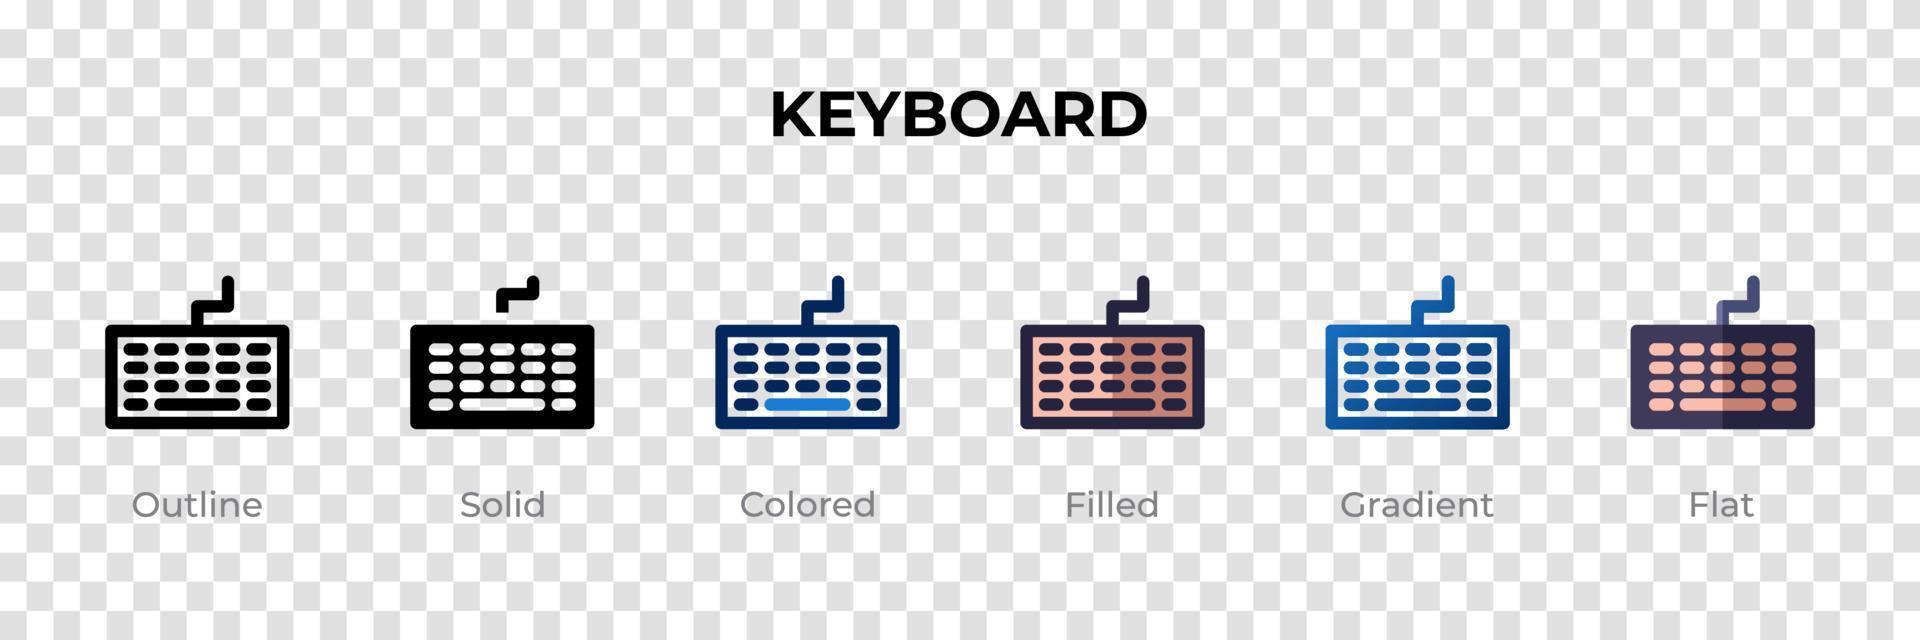 tangentbordsikon i annan stil. tangentbordsvektorikoner designade i kontur, solid, färgad, fylld, gradient och platt stil. symbol, logotyp illustration. vektor illustration